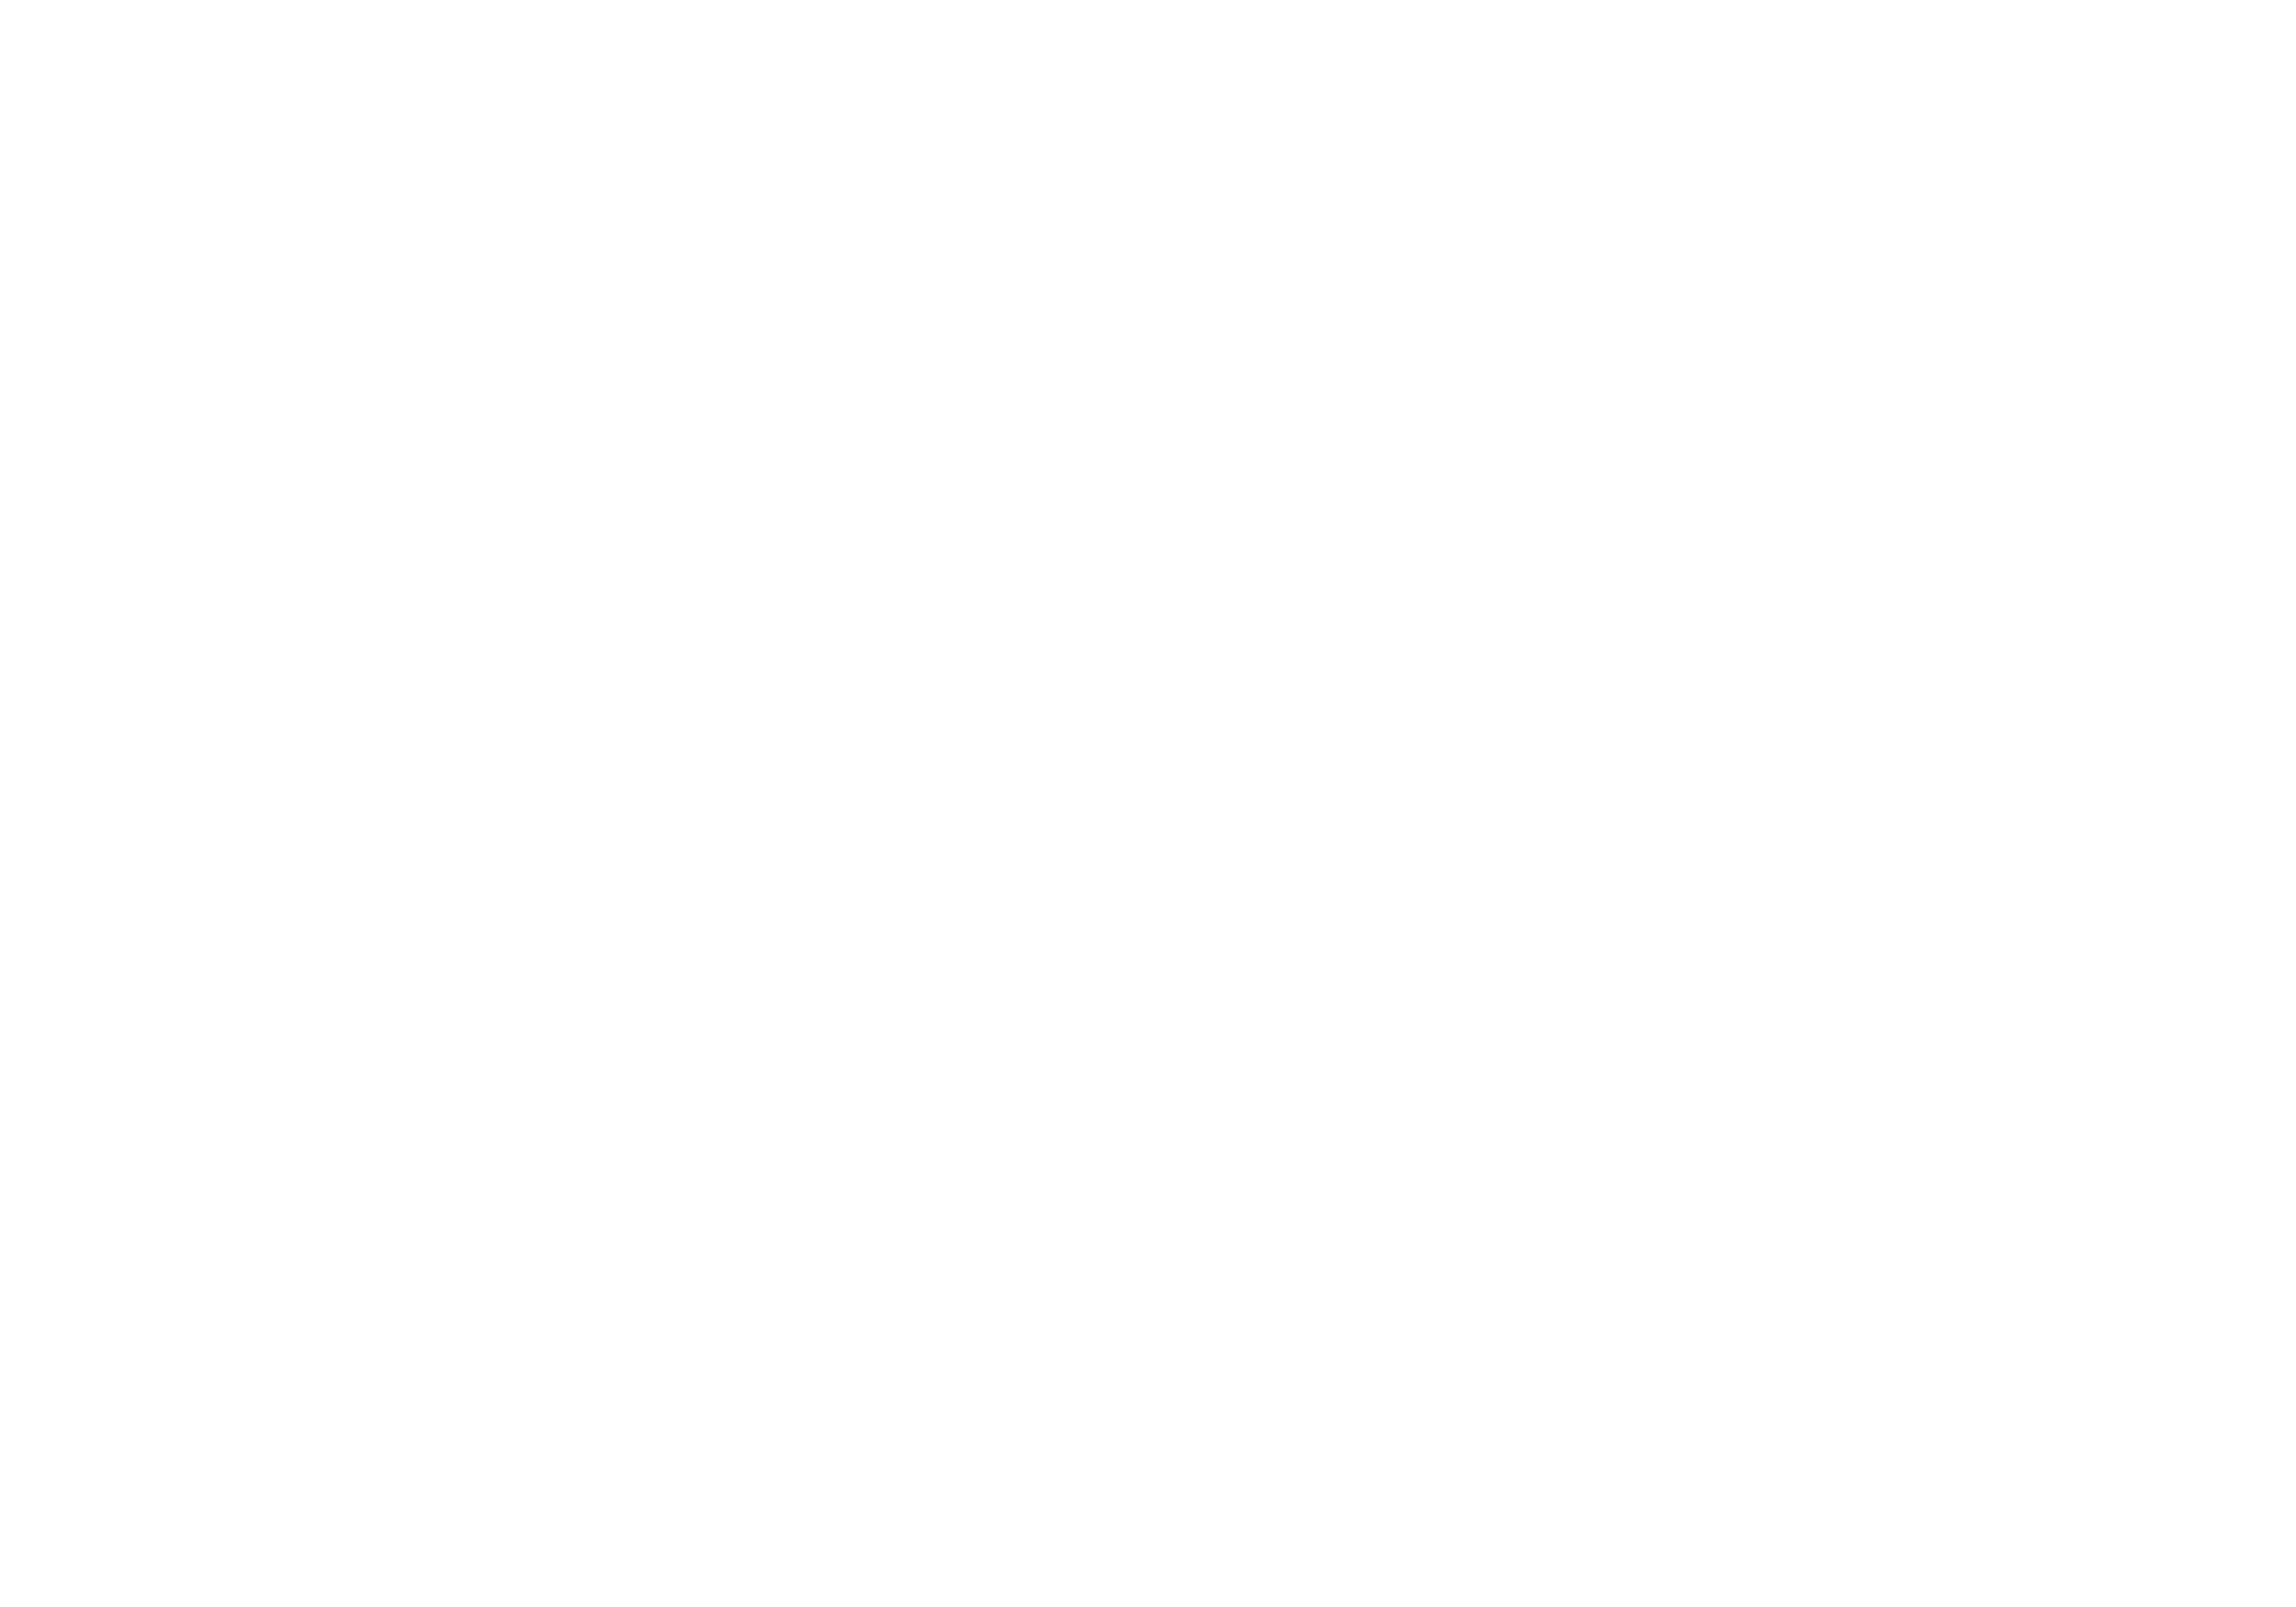 Innobraze company logo